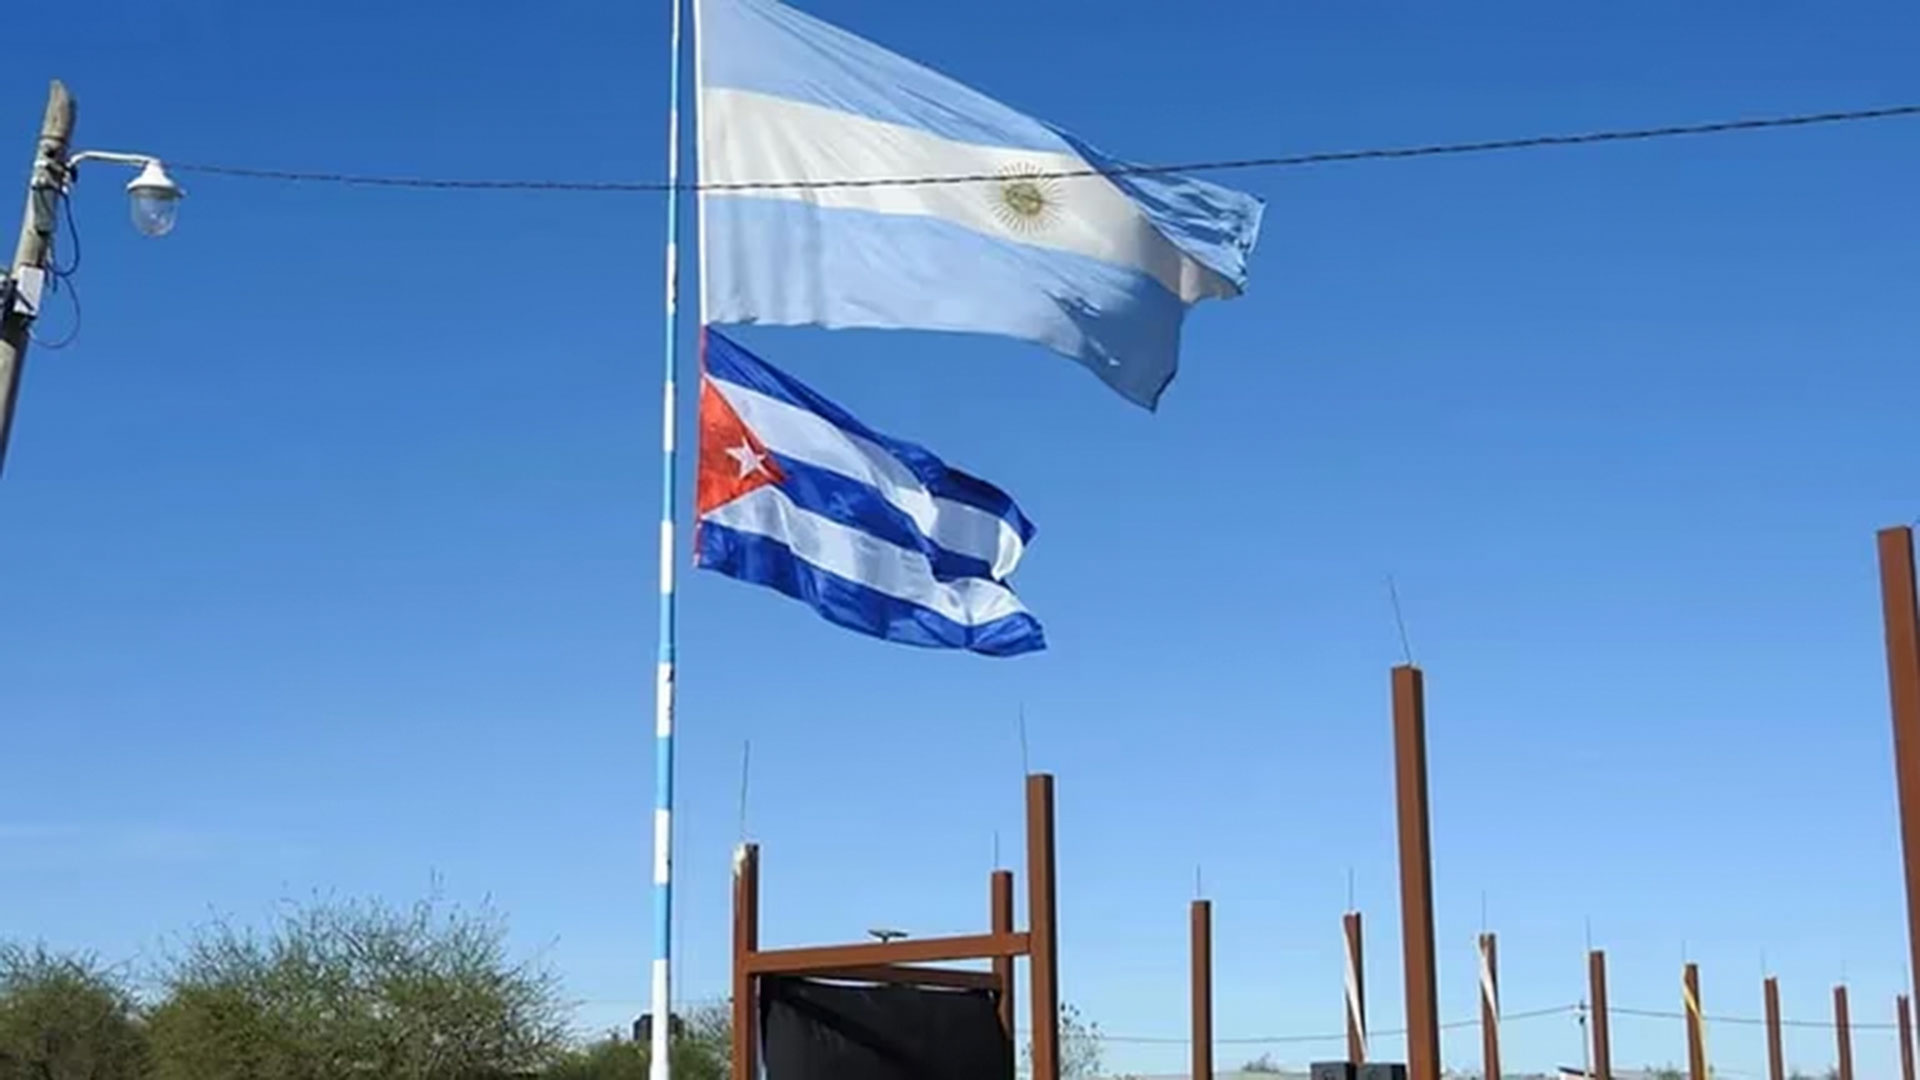 La Escuela Pública de Gestión Social N°2 del barrio "Emerenciano", en Resistencia, Chaco